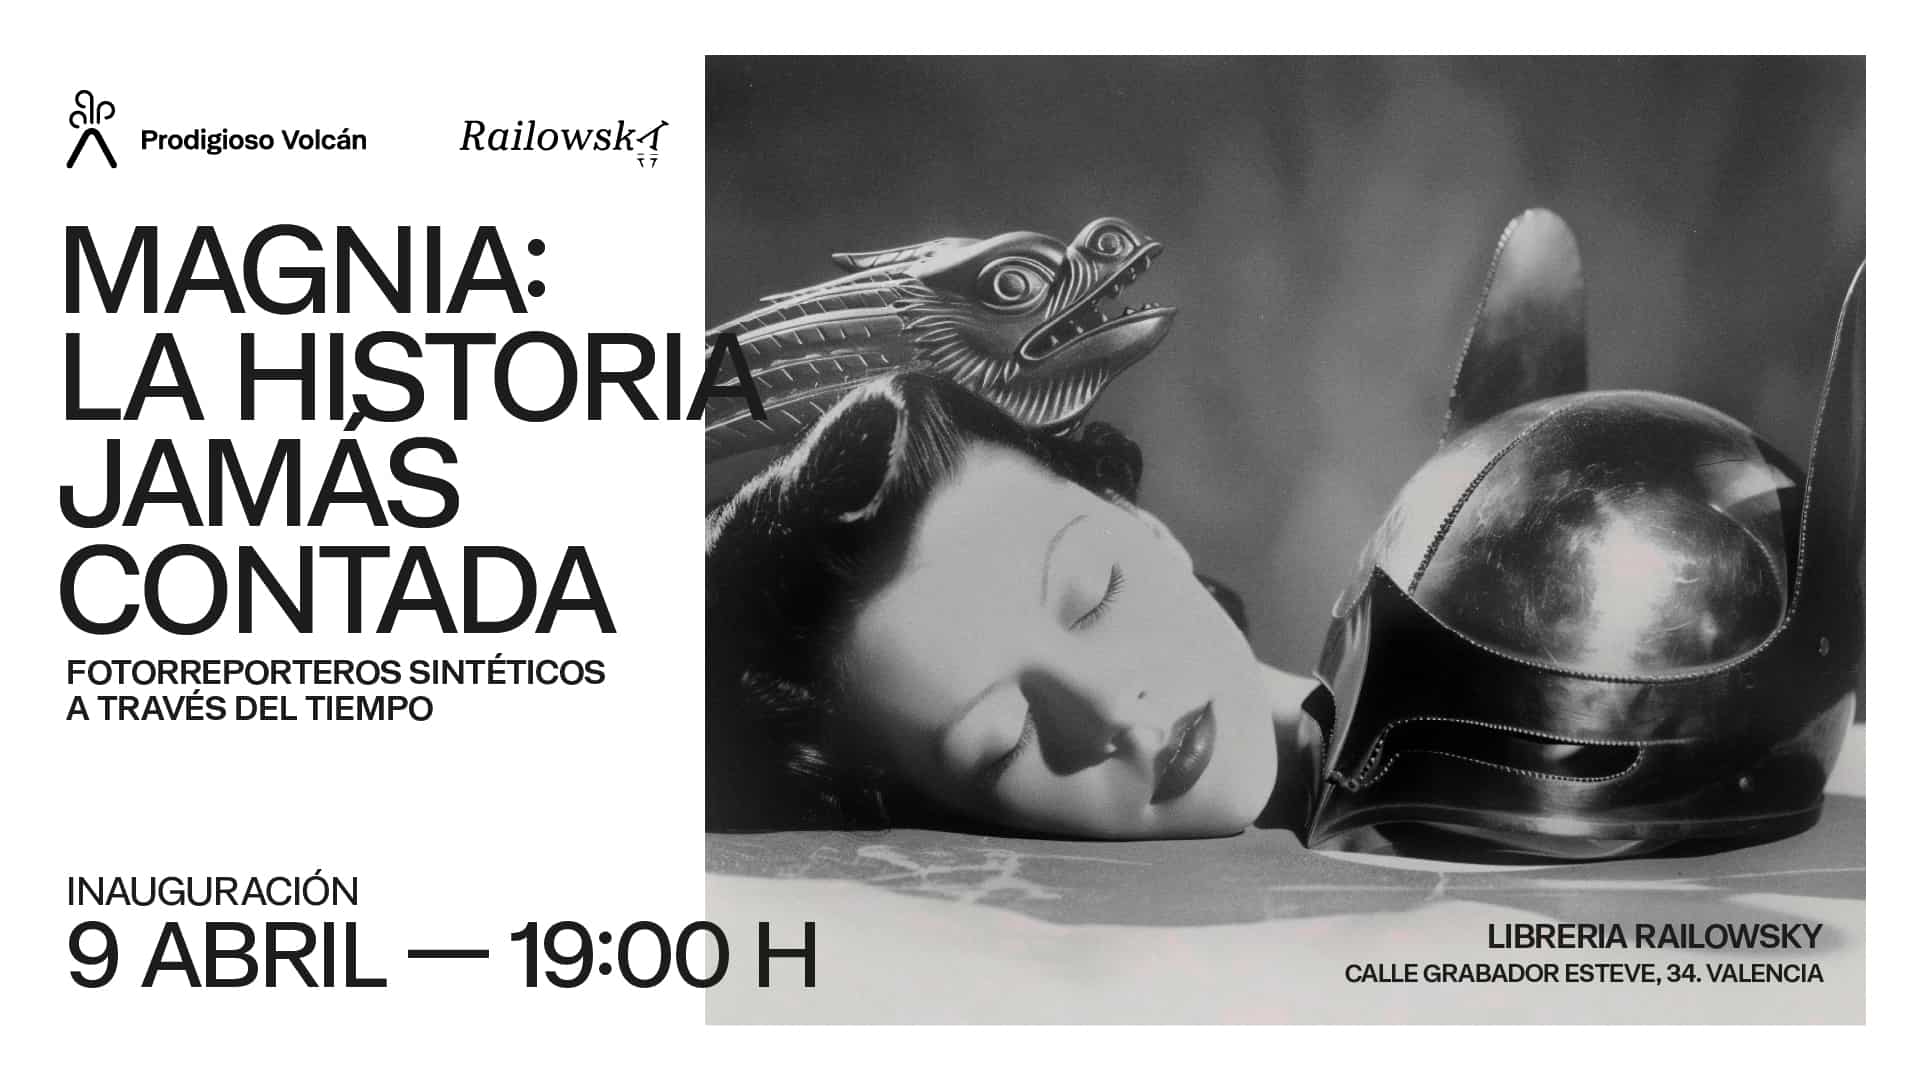 La Librería Railowsky y Prodigioso Volcán ponen en marcha una exposición de imágenes históricas de Valencia creadas con IA